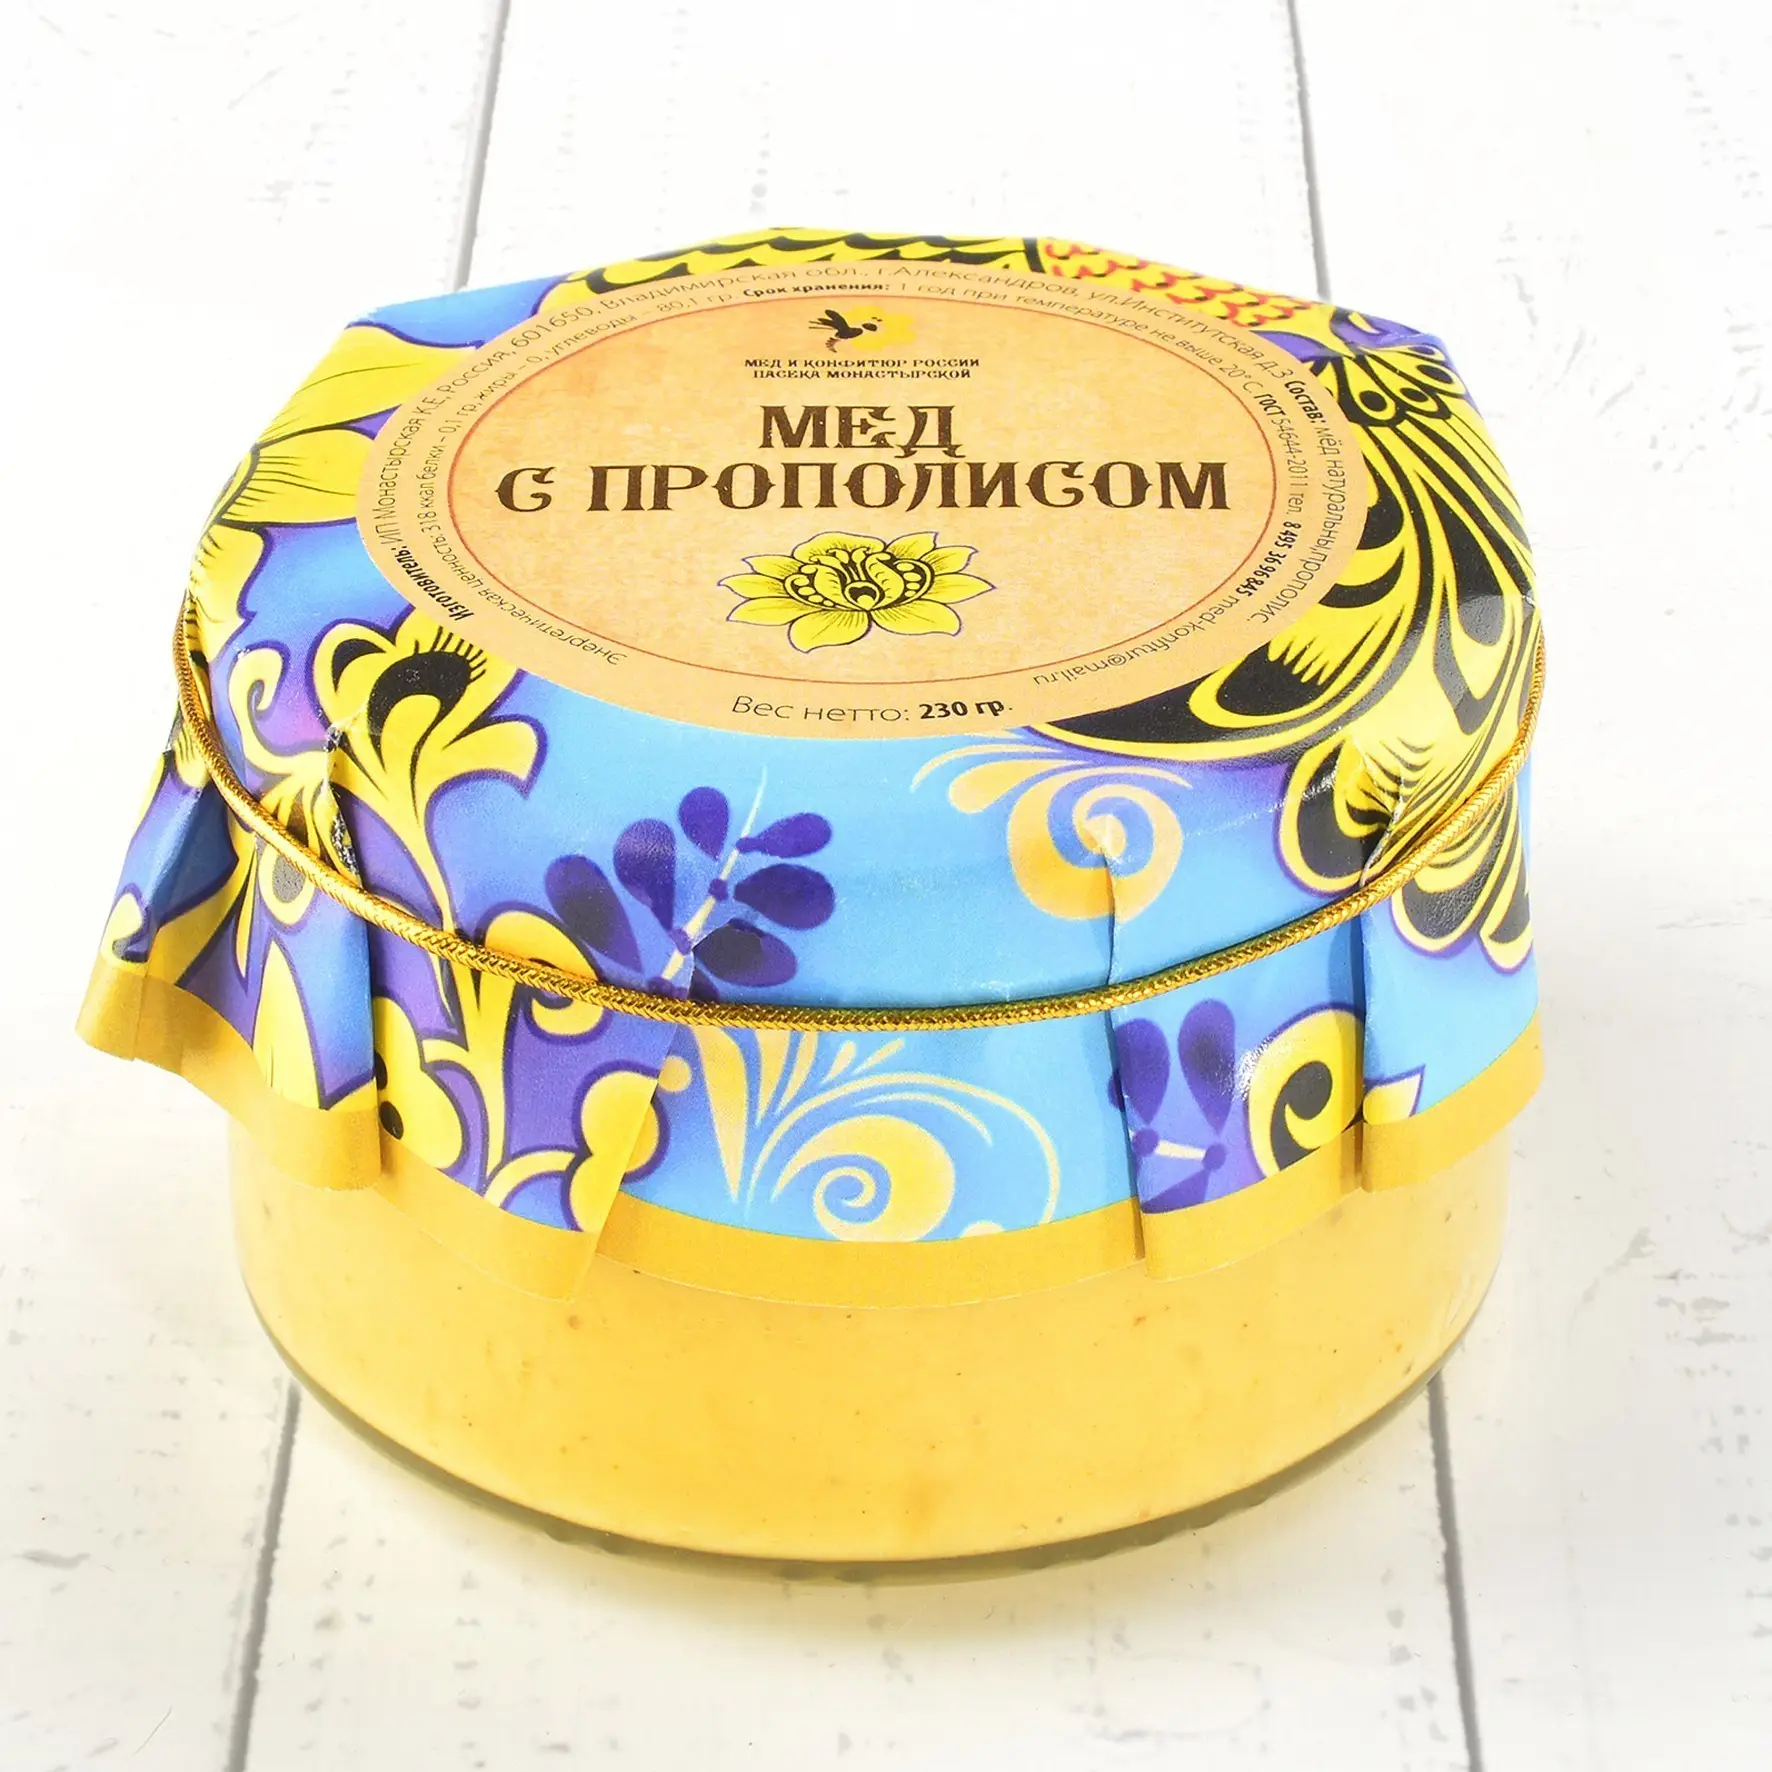 Крем-мёд с прополисом "Русский стиль" 230 гр.